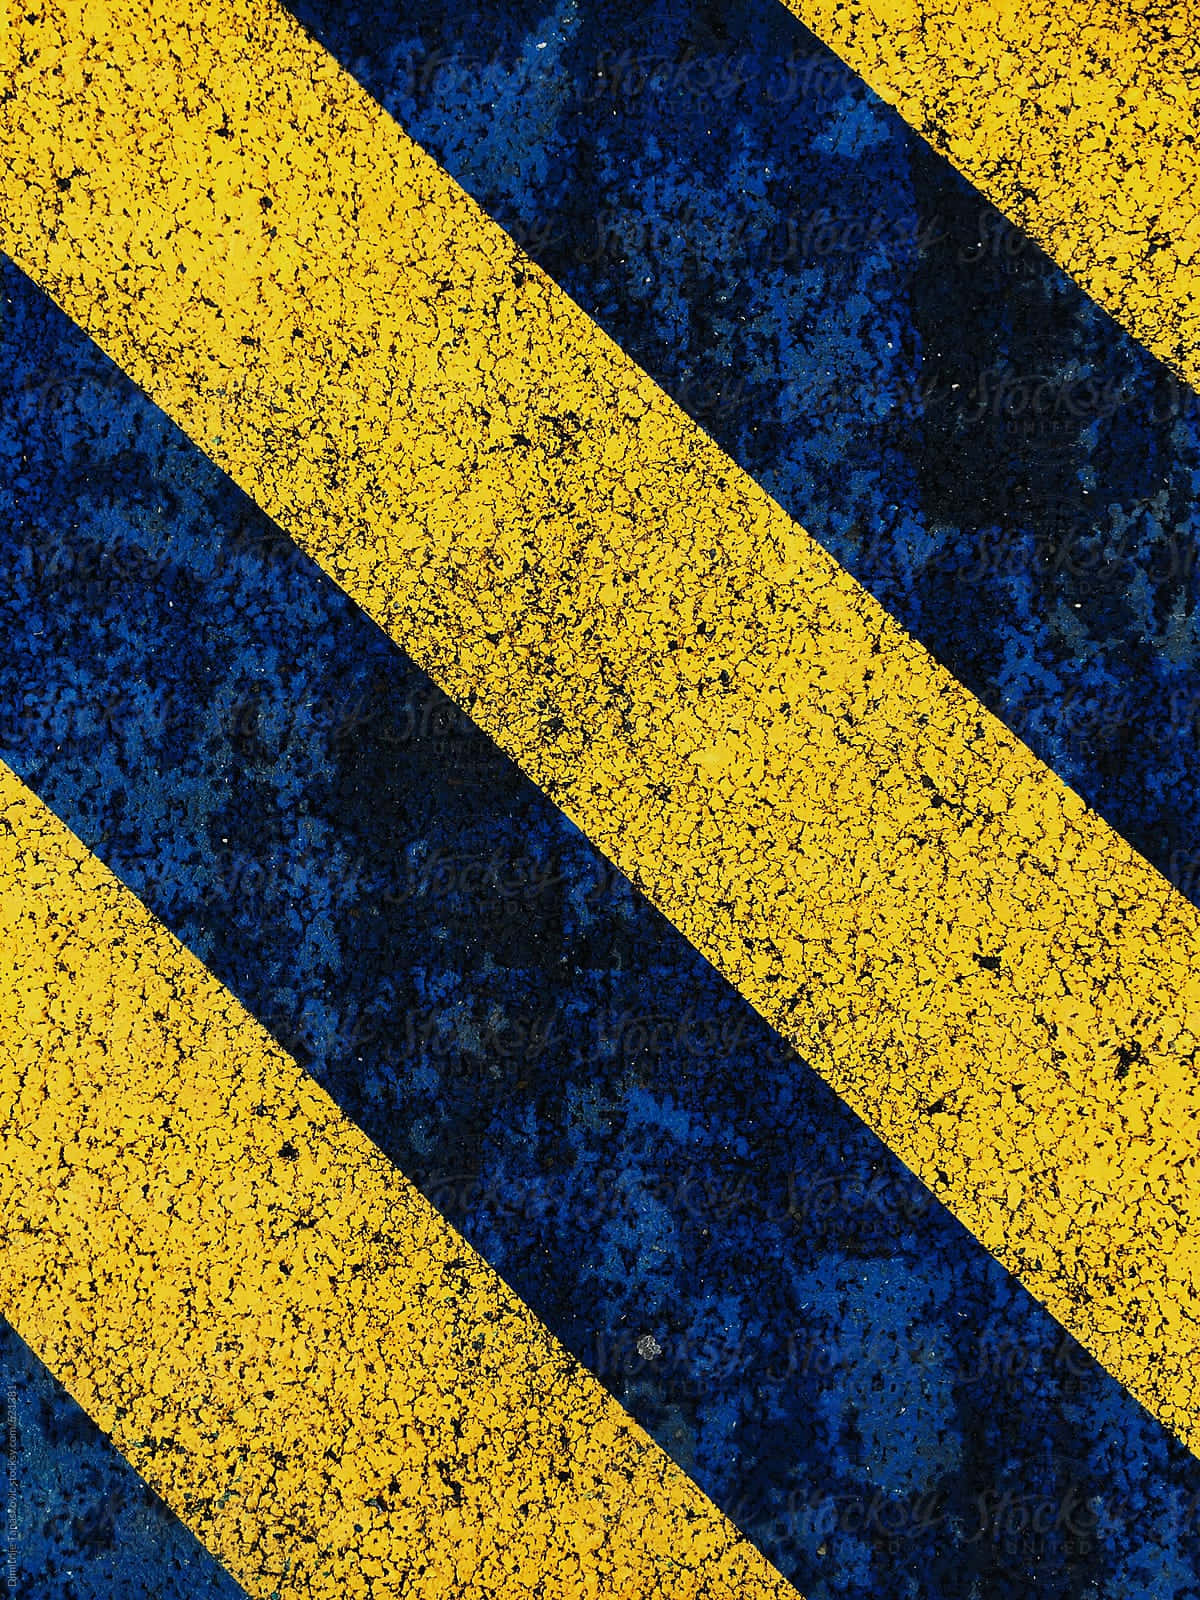 Fondode Pantalla Con Rayas Diagonales En Azul Y Amarillo Con Efecto De Puntos.